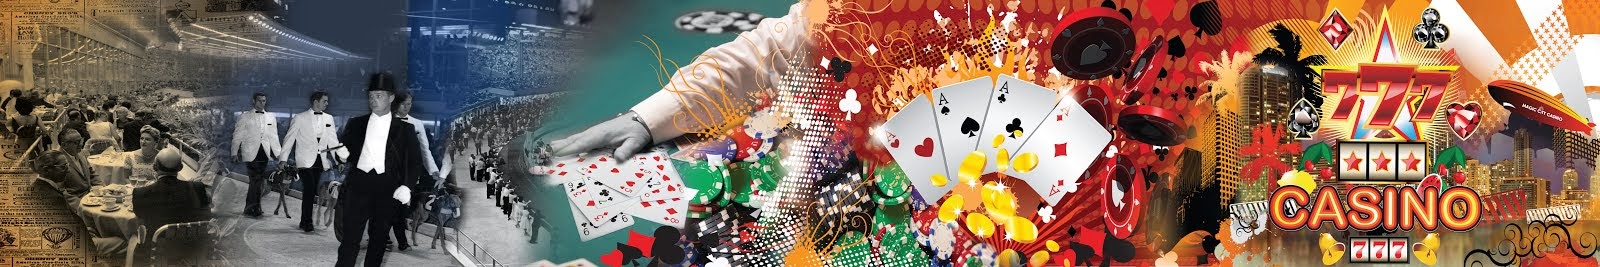 Online Casino Spiele | Sportwetten